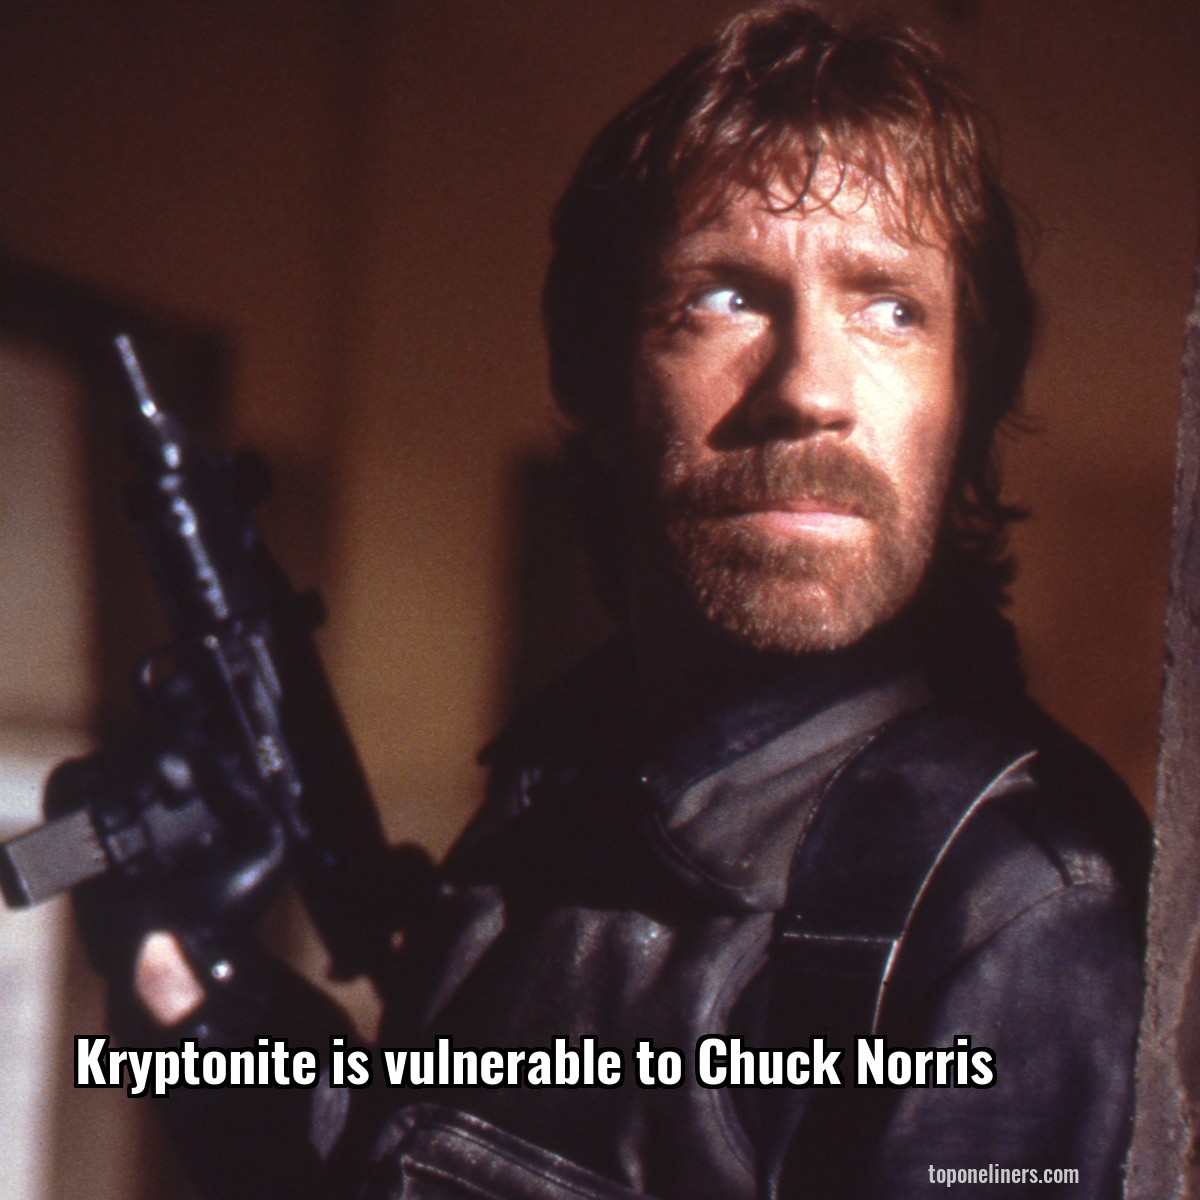 Kryptonite is vulnerable to Chuck Norris